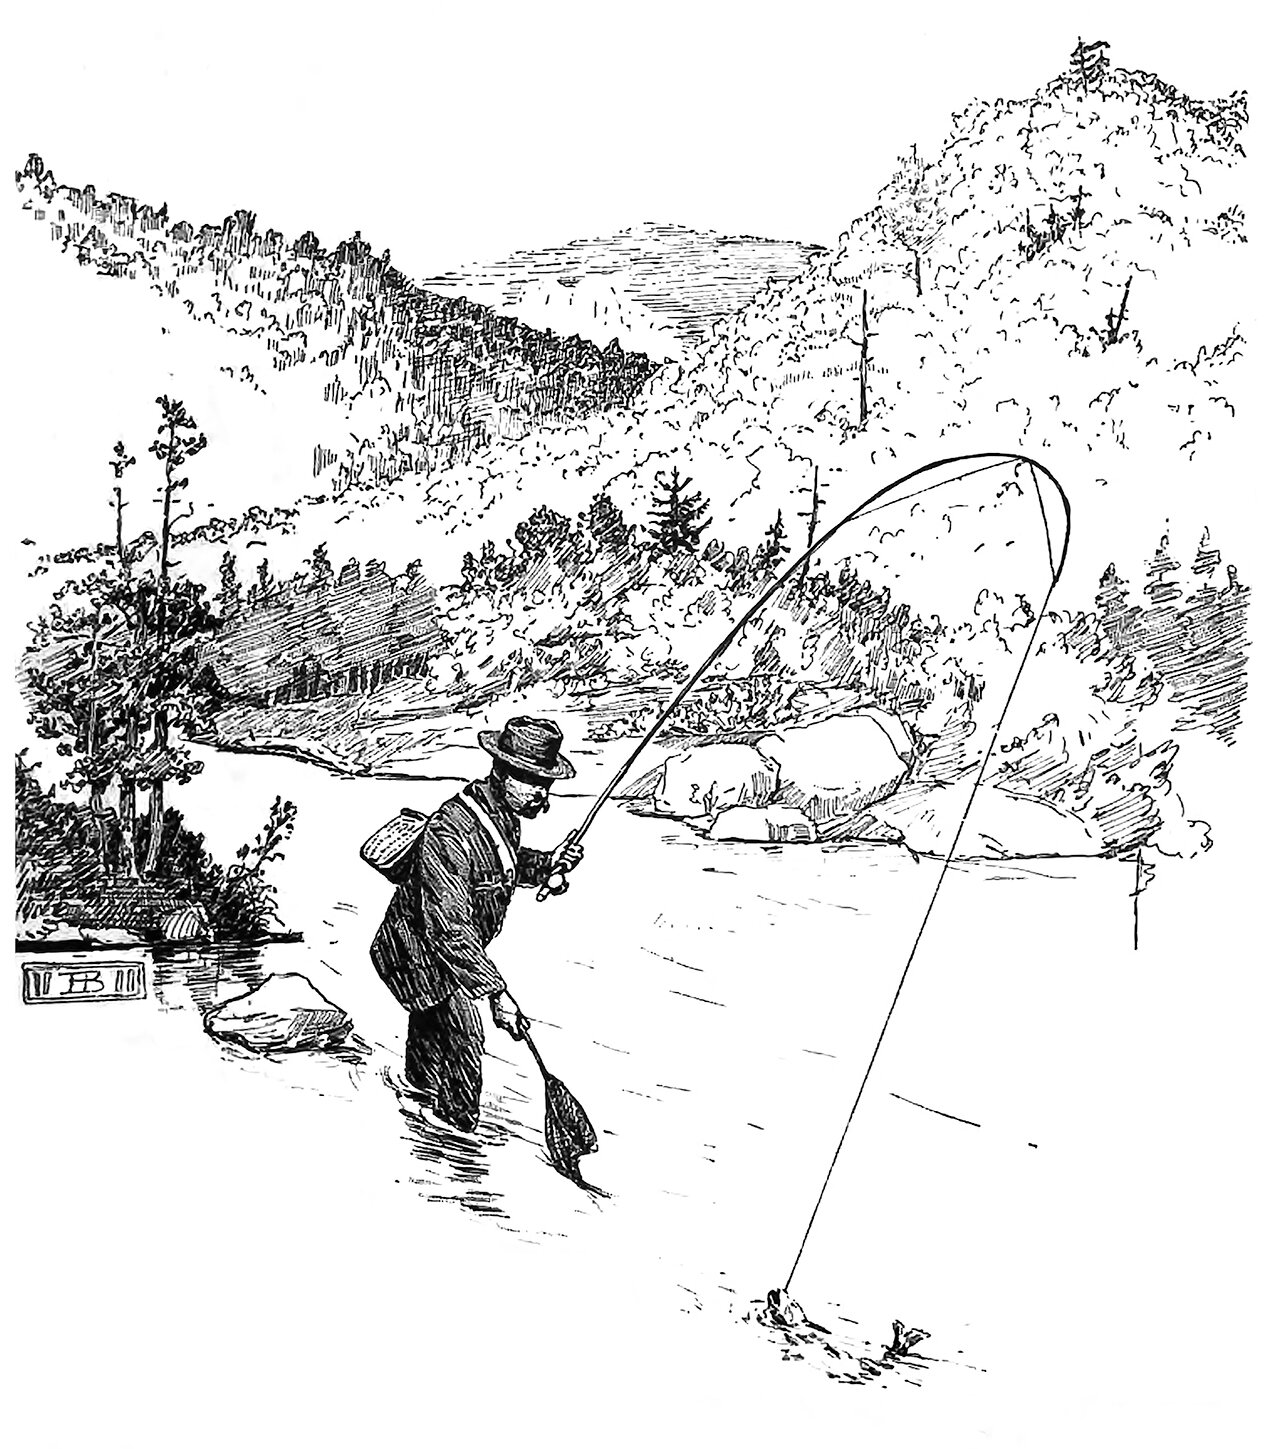 48 Outdoor Magazine Pleasures of Fly Fishing p 199 June 1889-1 copy.jpg